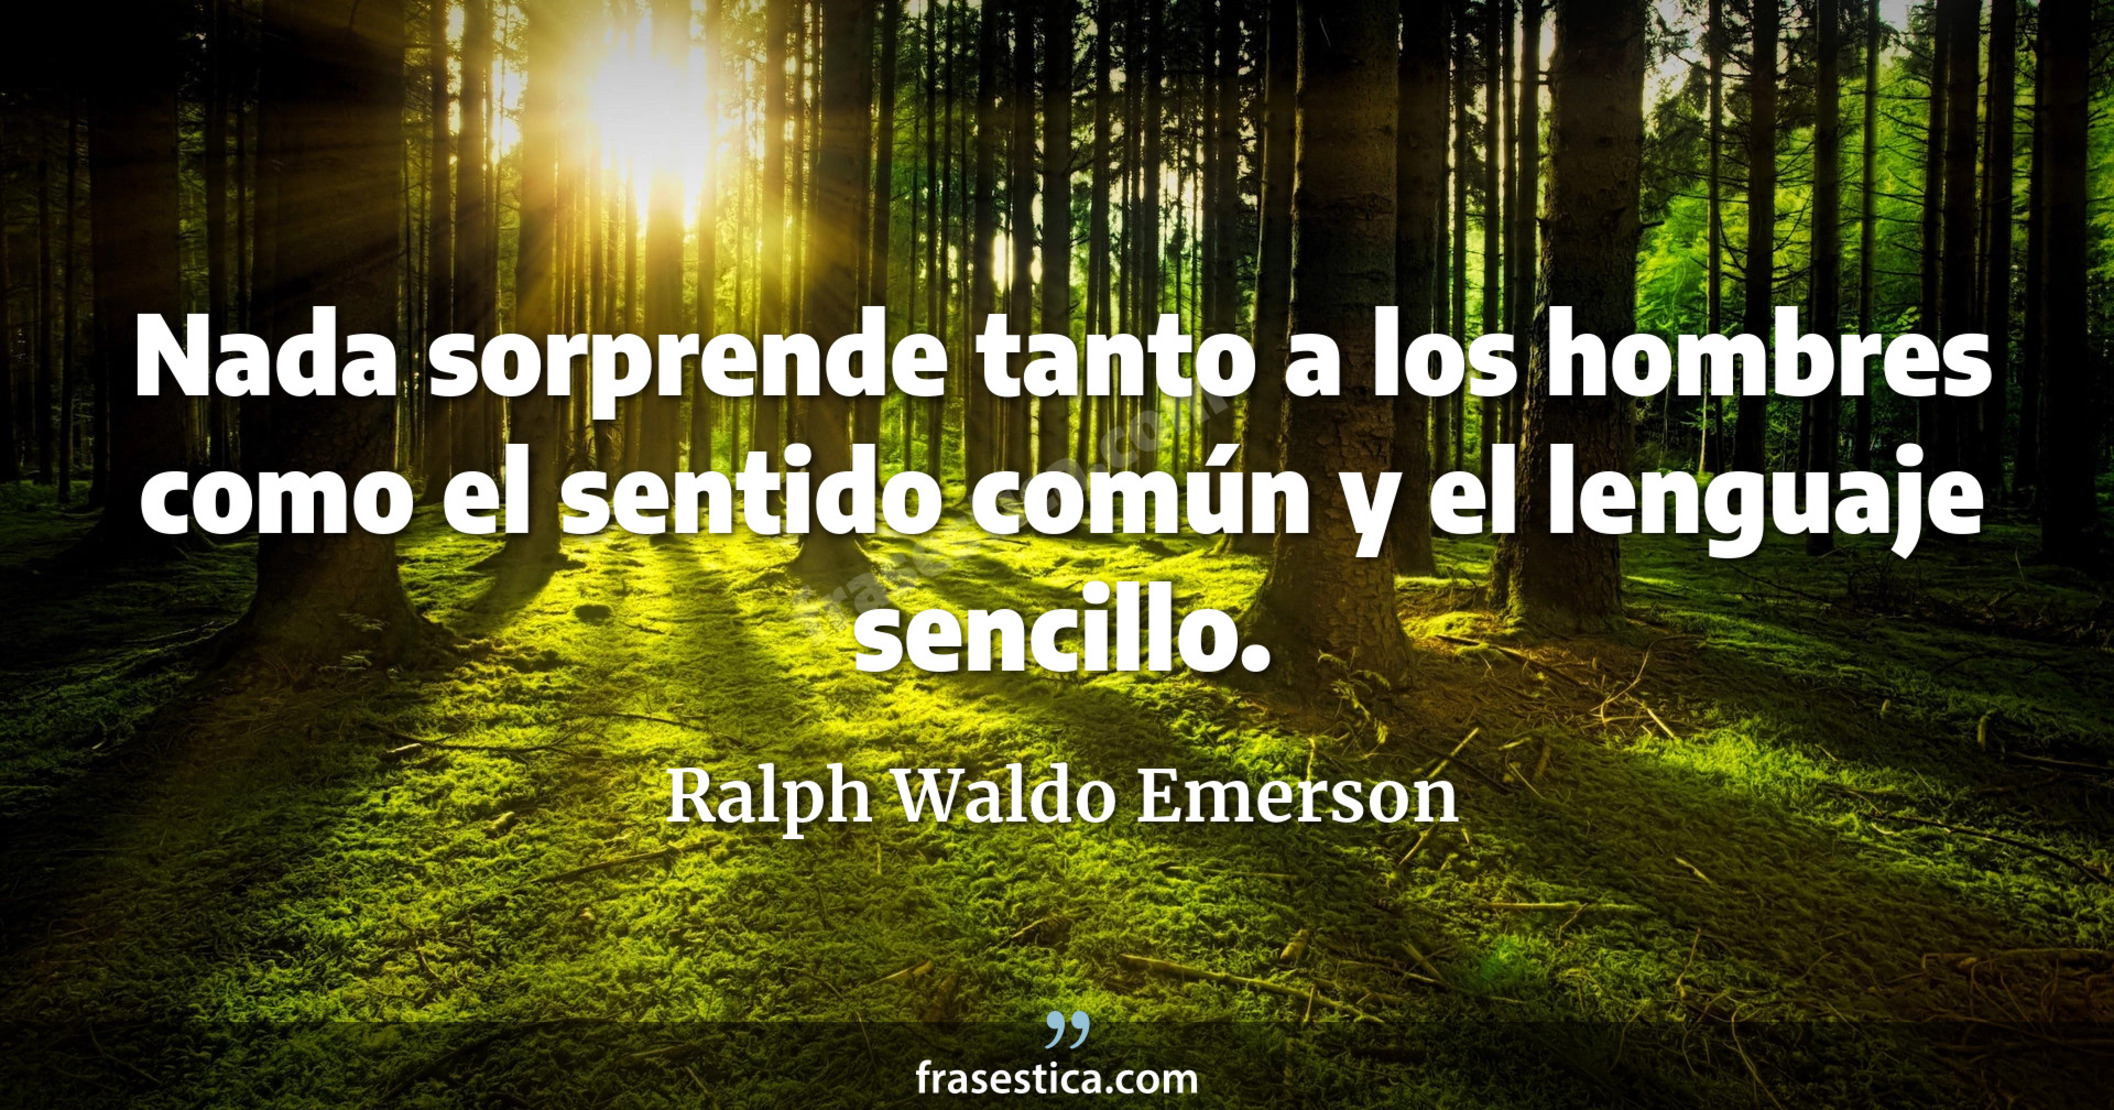 Nada sorprende tanto a los hombres como el sentido común y el lenguaje sencillo. - Ralph Waldo Emerson